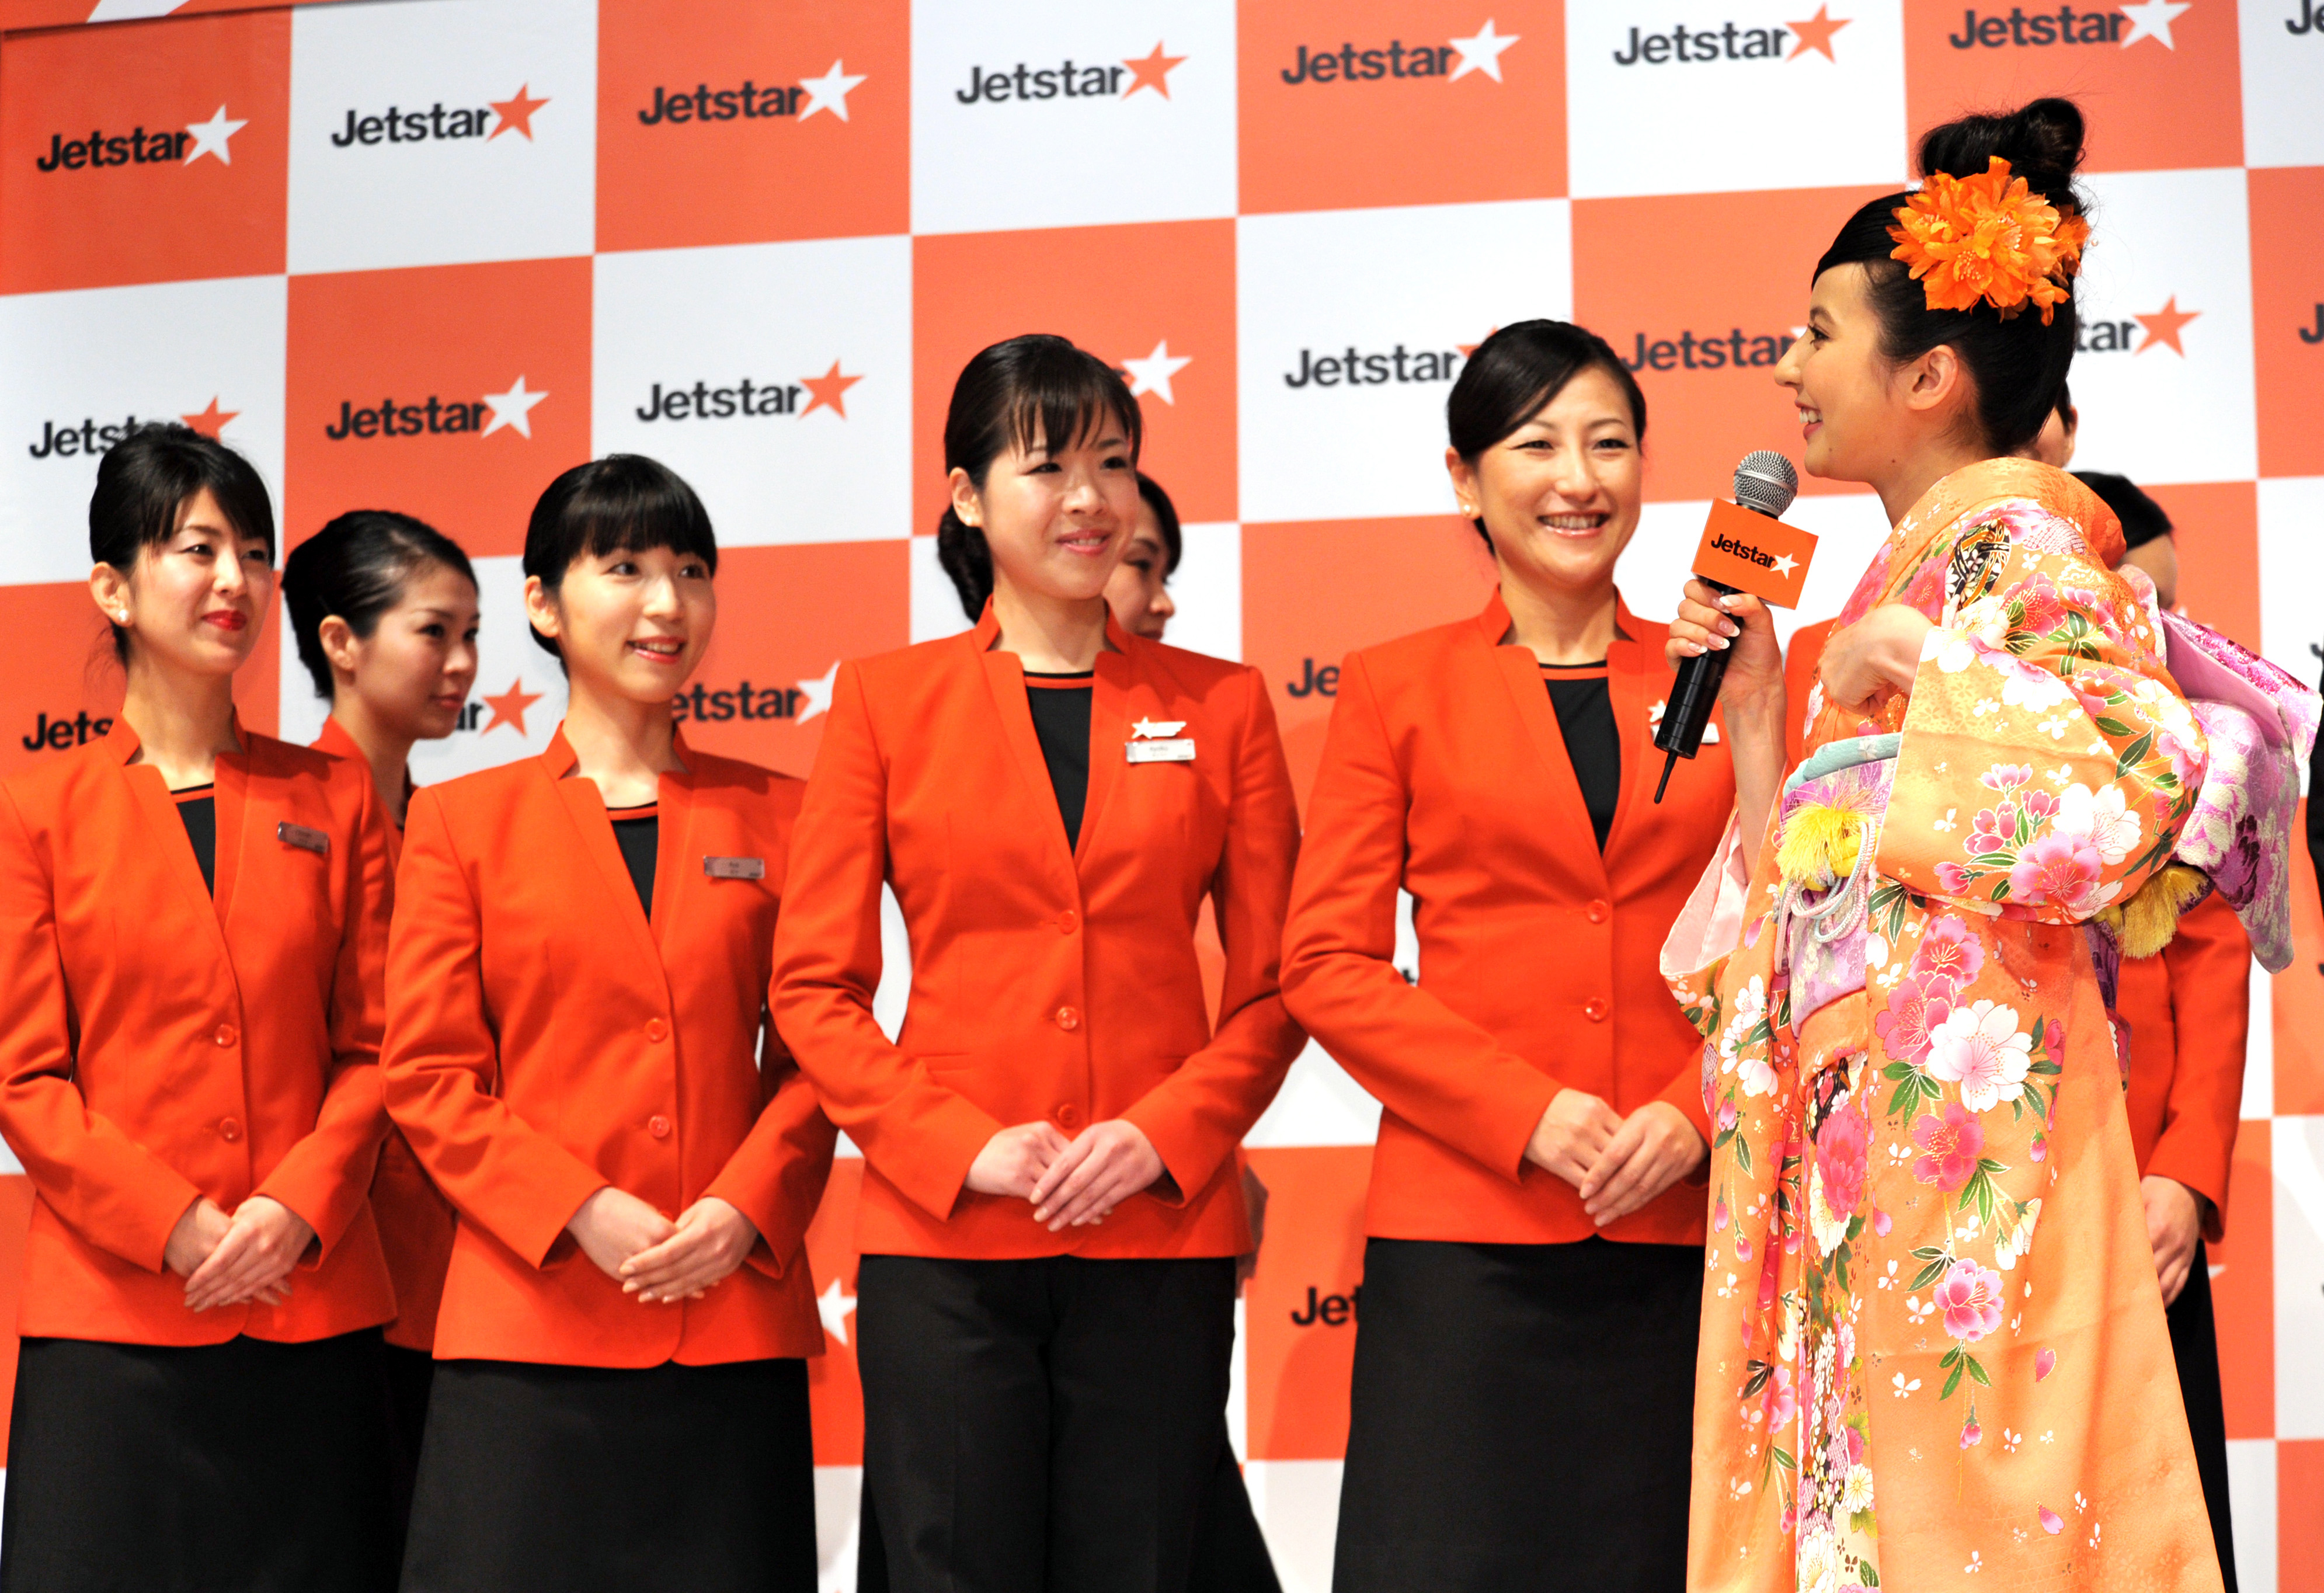 日本的企业文化让外国人感到新奇。Getty Images